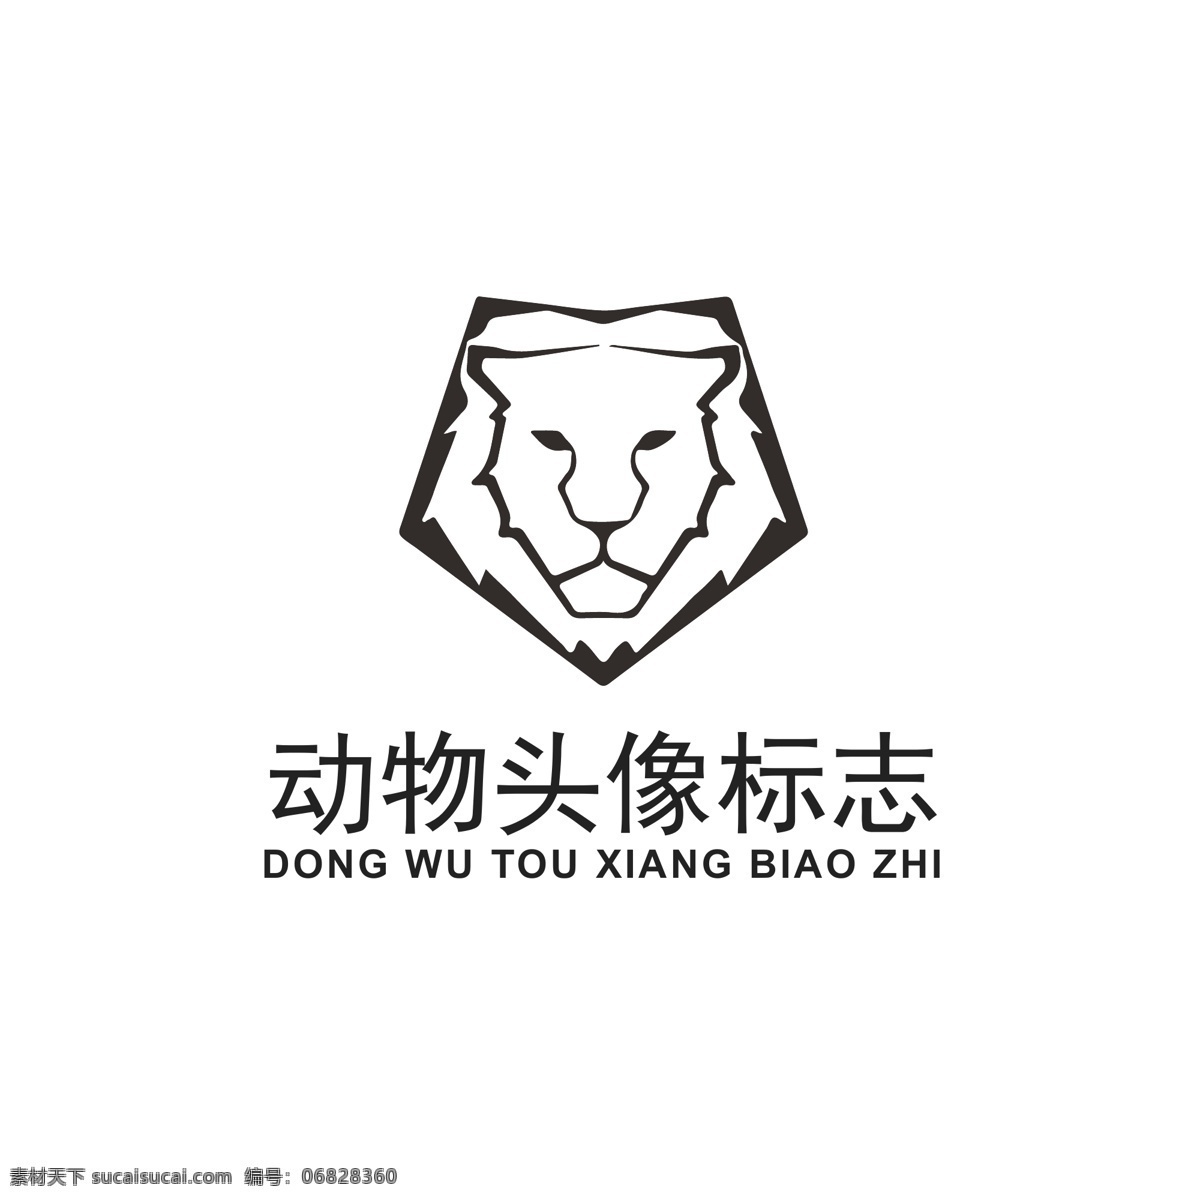 几何 动物 头像 logo 动物logo 狮子logo 狮子头像 动物头像 品牌logo 几何动物 logo设计 标识 标志 ai矢量